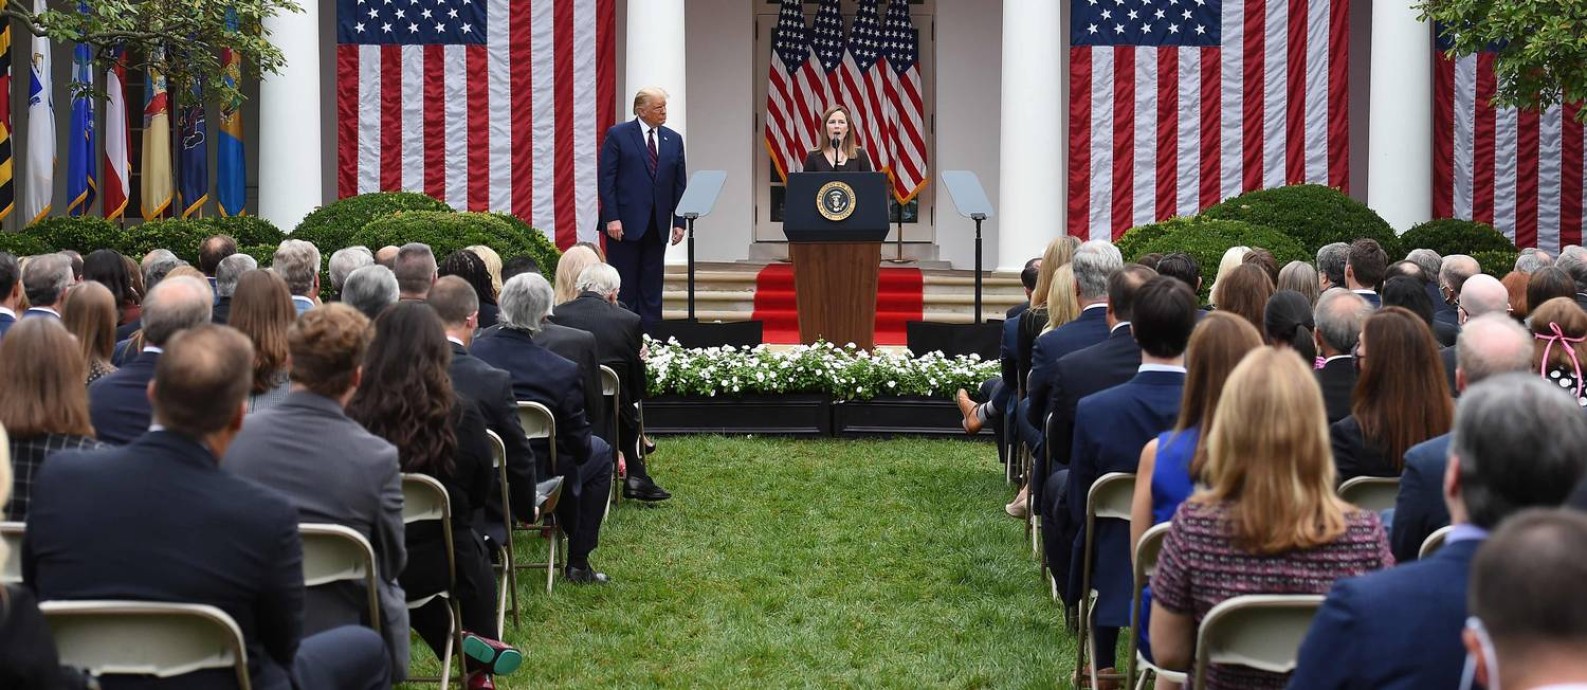 Indicada para a Suprema Corte dos EUA pelo presidente Donald Trump, Amy Coney Barrett discursa em cerimônia que reuniu 200 pessoas nos jardins da Casa Branca, muitas sem máscaras e longe de respeitar o distanciamento social Foto: OLIVIER DOULIERY / AFP